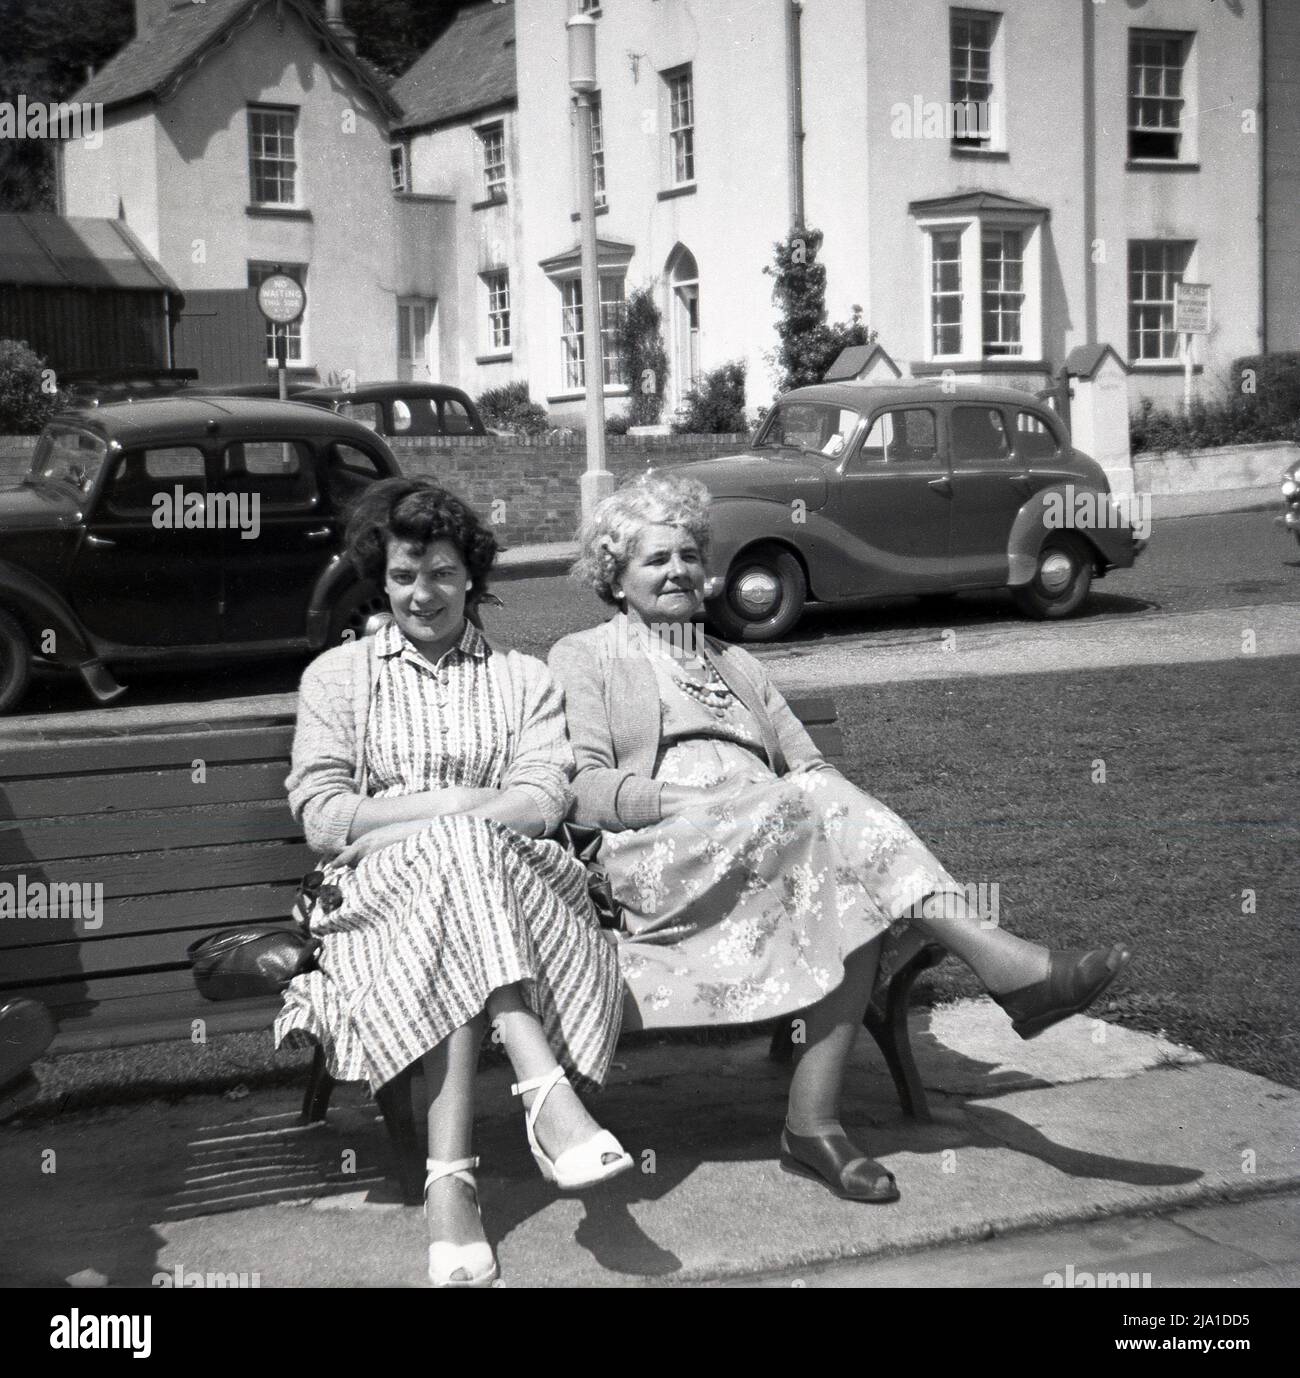 1950s, storica, una donna e sua madre che indossano gli abiti lunghi del giorno, seduti insieme su una panchina, prendendo l'aria di mare, Inghilterra, Regno Unito. Auto dell'epoca parcheggiate sul lato della strada. Foto Stock